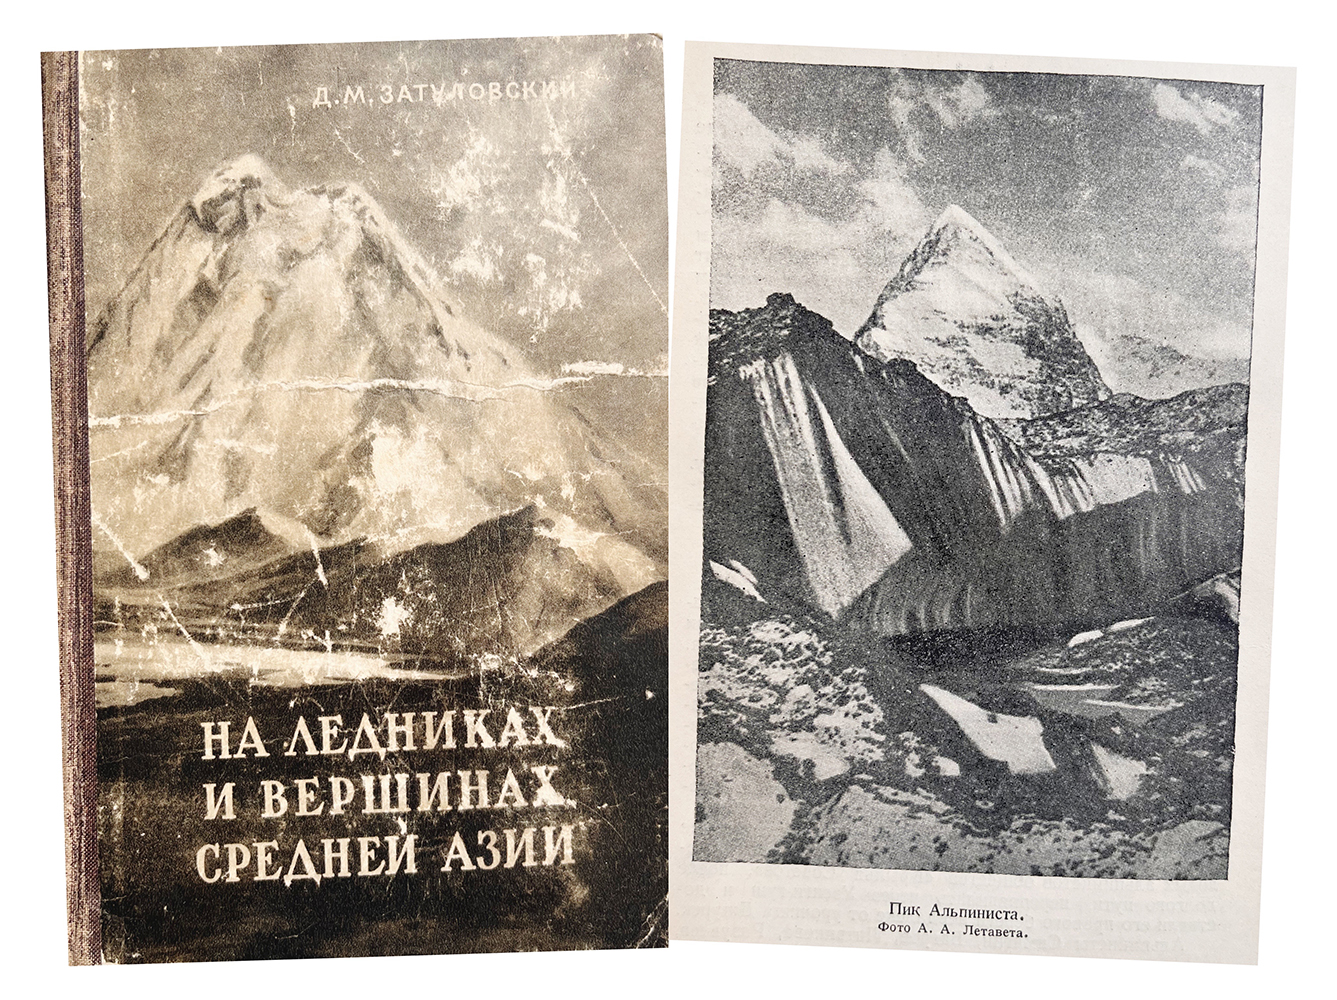 Купить книгу Д.М. Затуловского (На ледниках и вершинах Средней Азии)